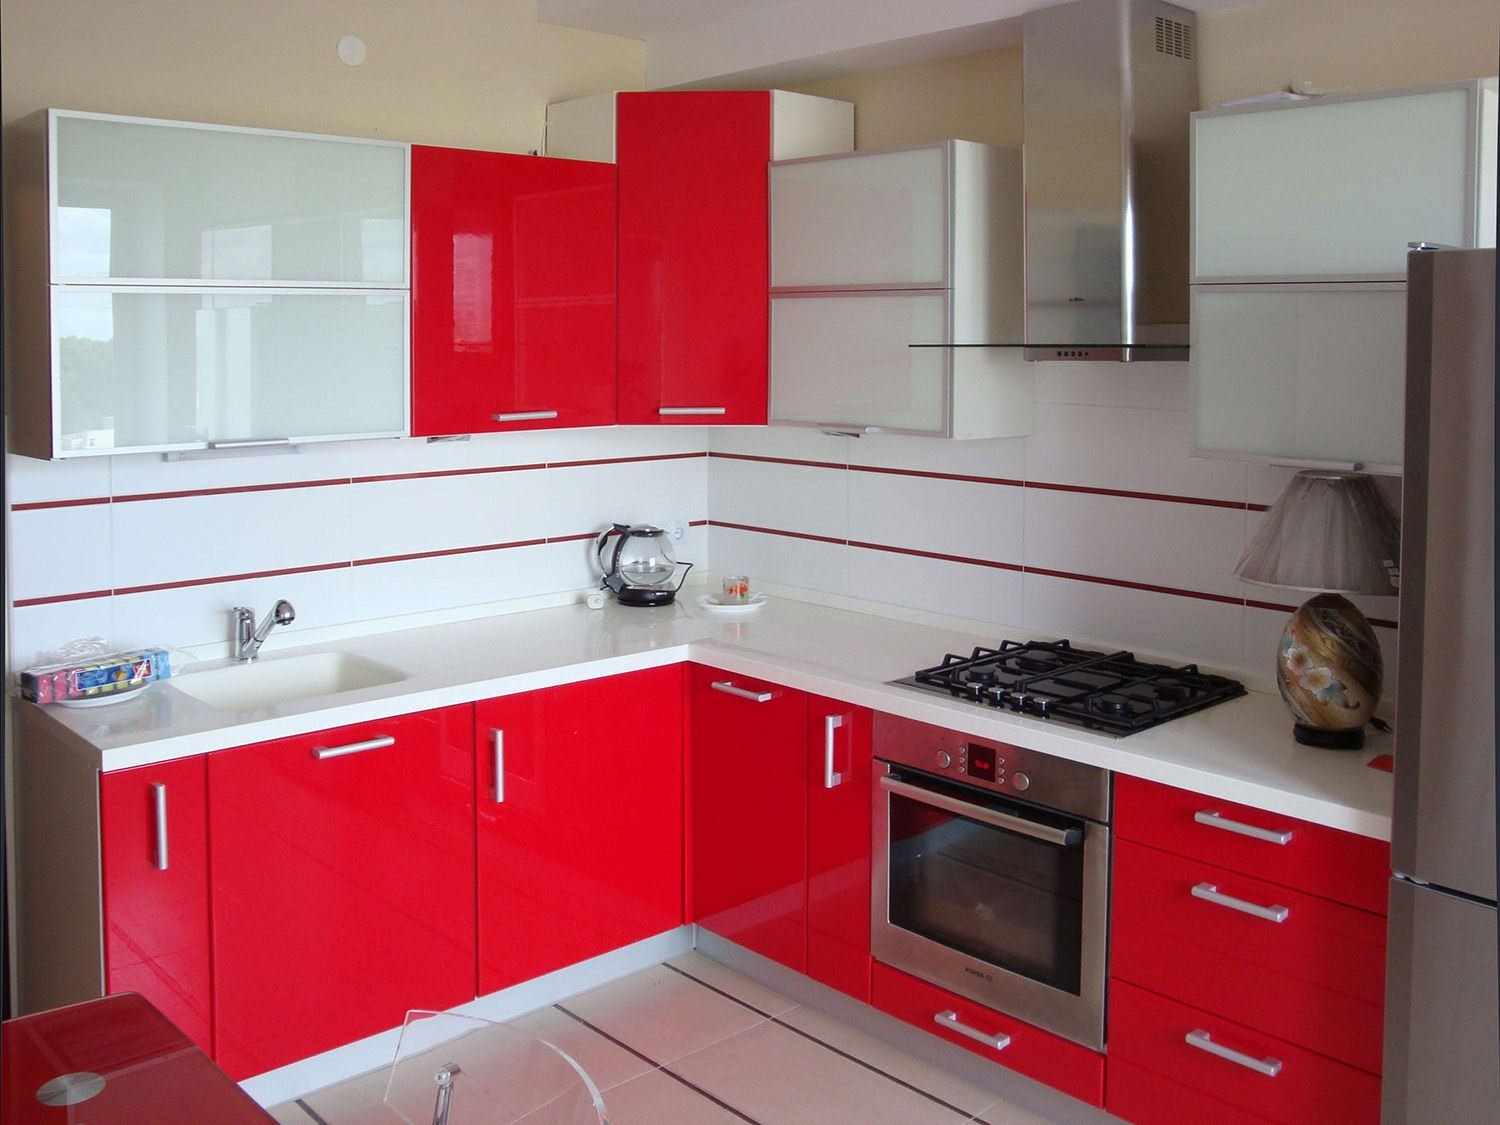 um exemplo de um design de cozinha vermelho claro